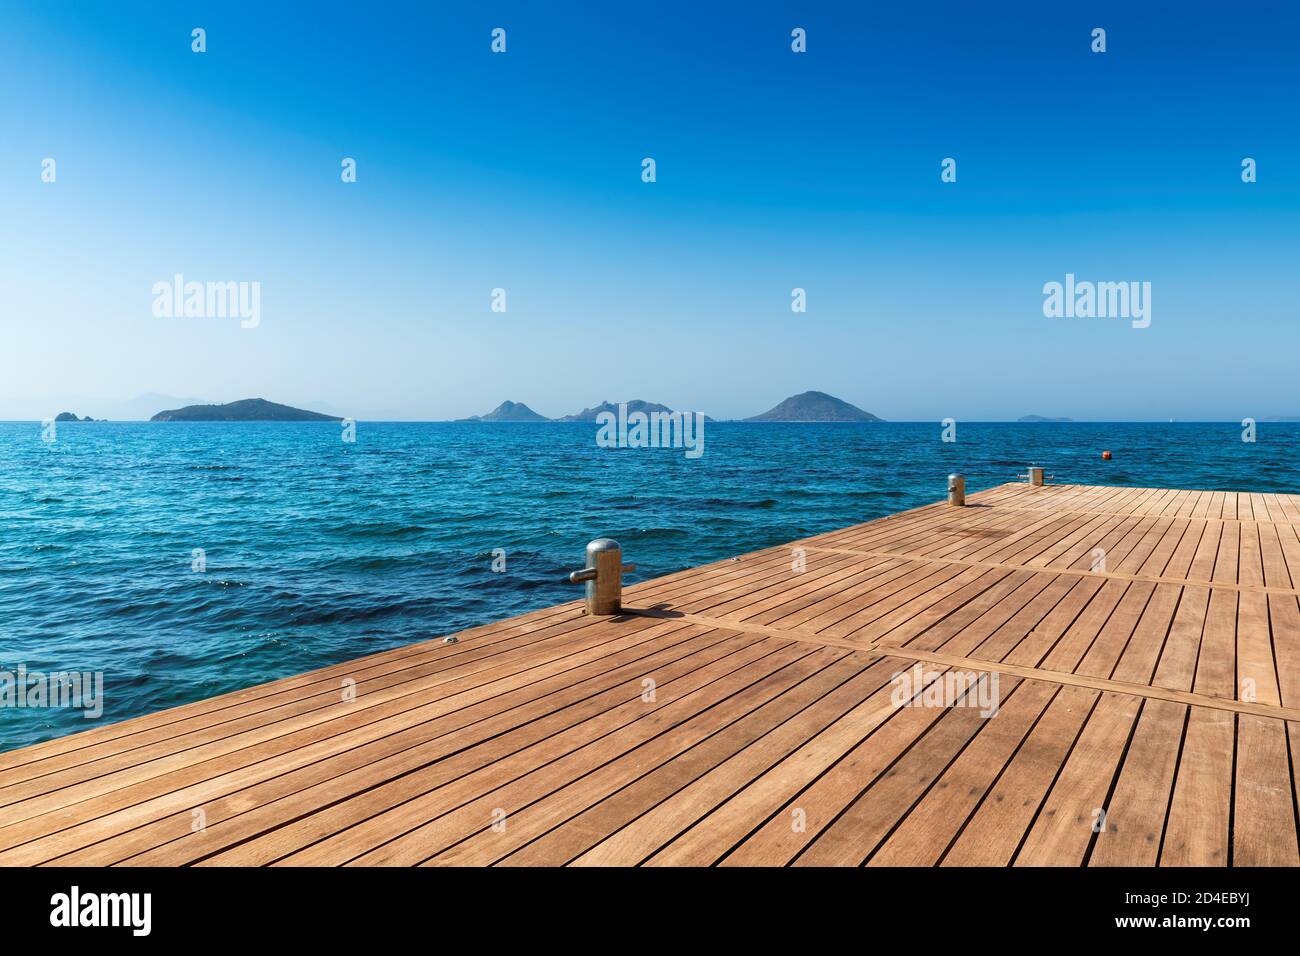 Molo in legno e bellissimo mare sulla costa mediterranea. Foto Stock